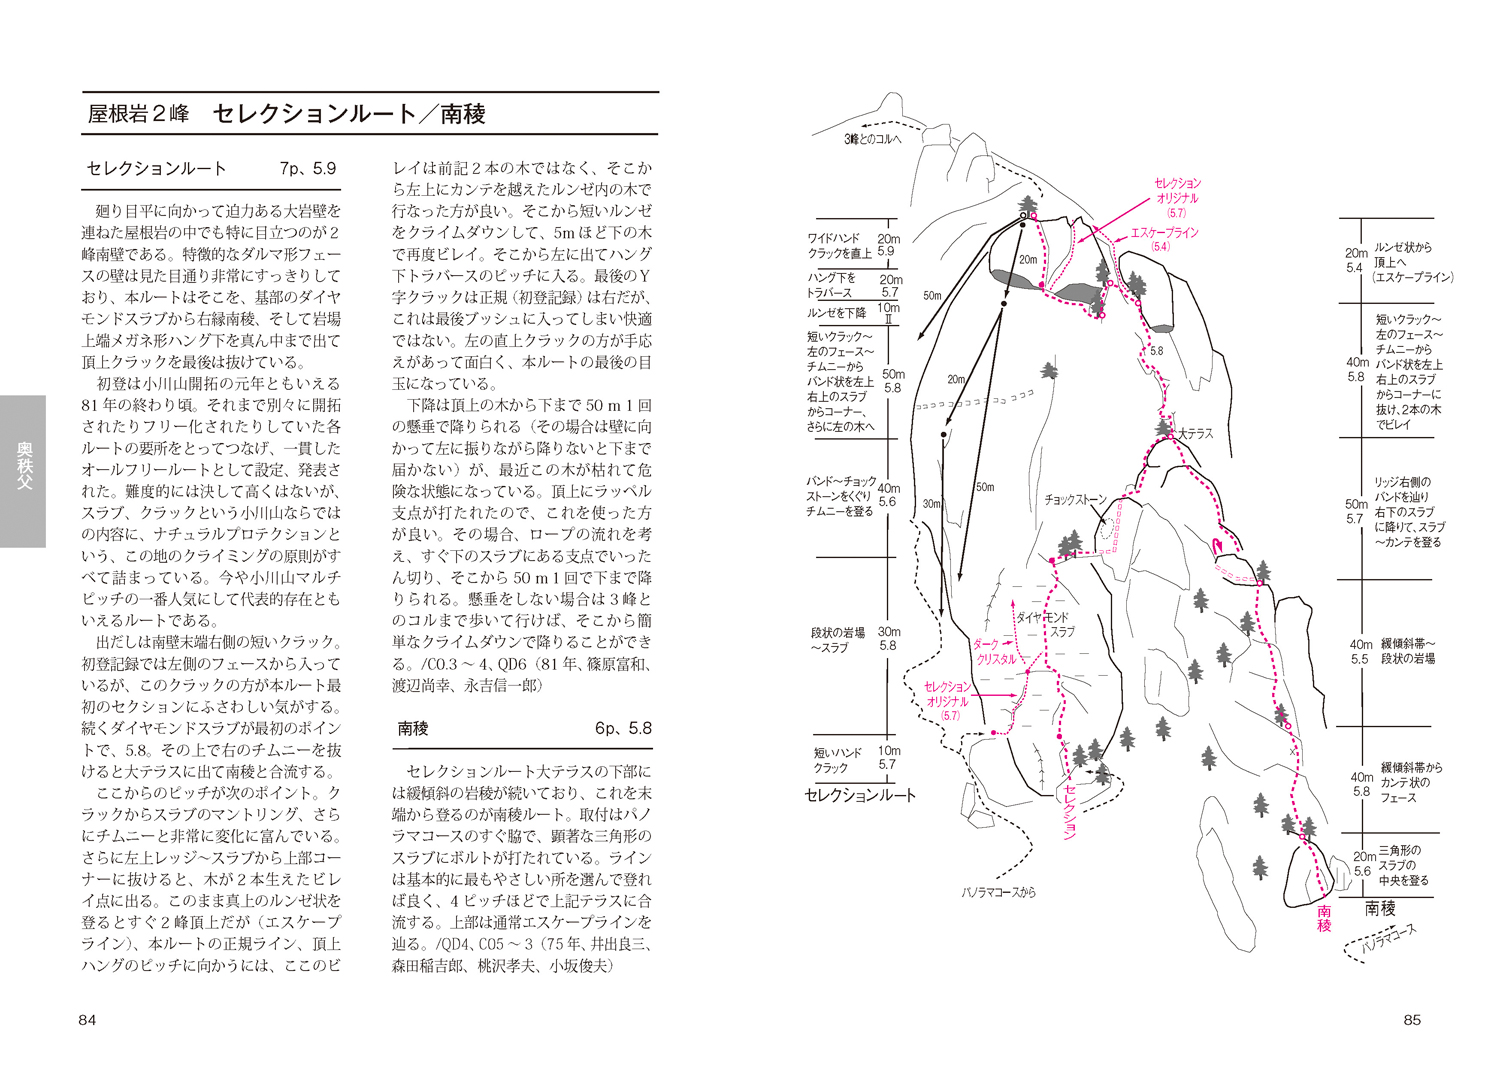 希少 岩場ゲレンデガイド 関東編 クライミング ルート図 山と渓谷社 1977-